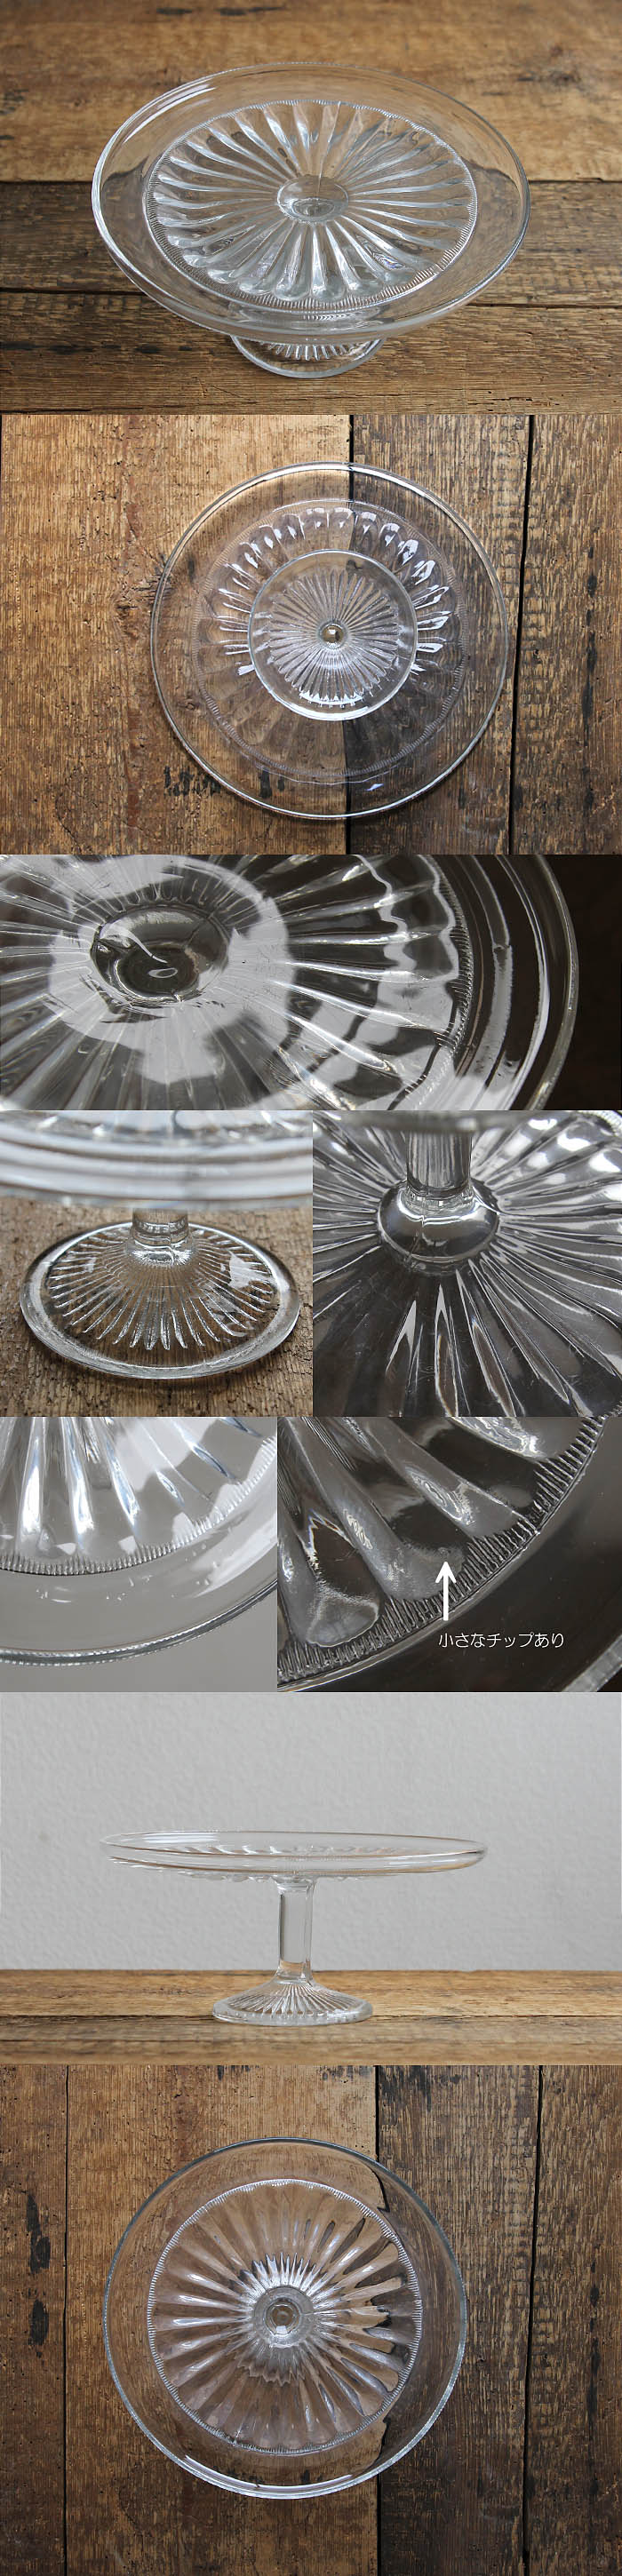 イギリス アンティーク ガラスケーキスタンド 脚付き プレスガラス コンポート 皿 雑貨 V-205